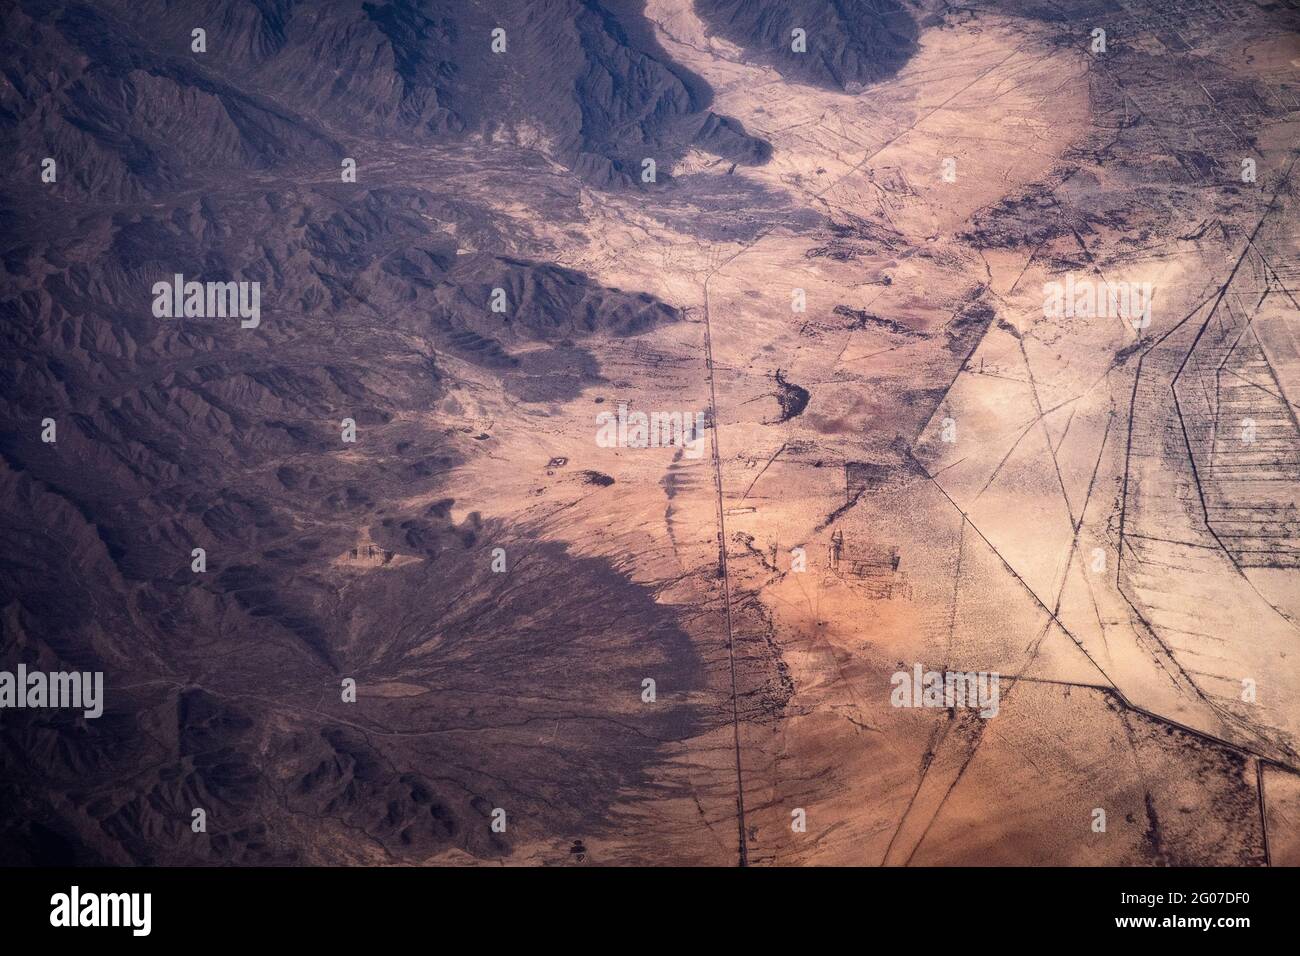 Vue aérienne des routes de terre dans le désert, survolant la Sierra Madre Oriental, Coahuila, nord du Mexique Banque D'Images